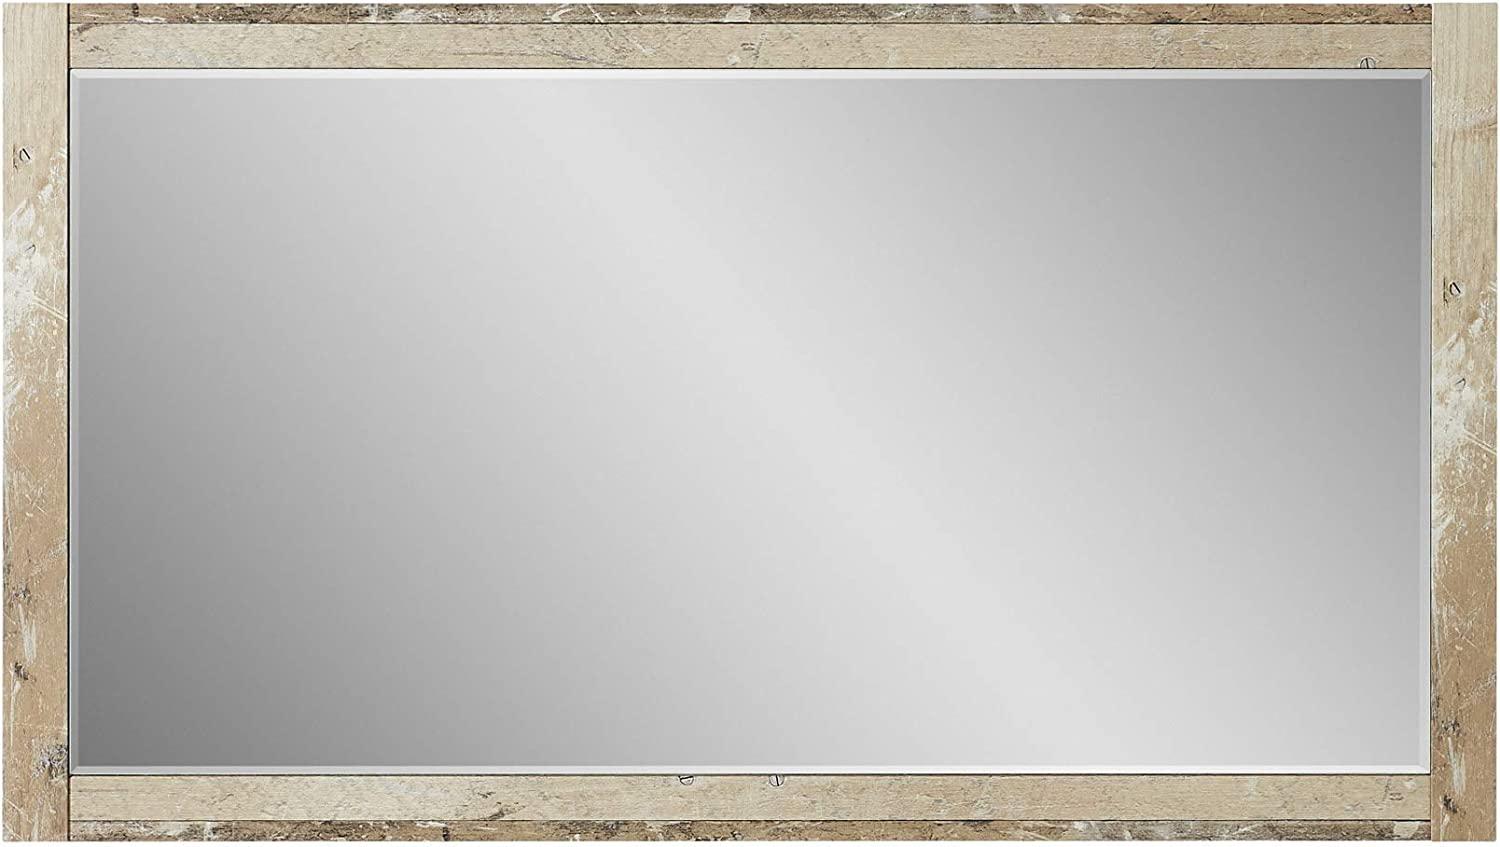 Möbel-Eins RAMINA Spiegel, Material Dekorspanplatte, Used Style braun 125 x 70 cm Bild 1